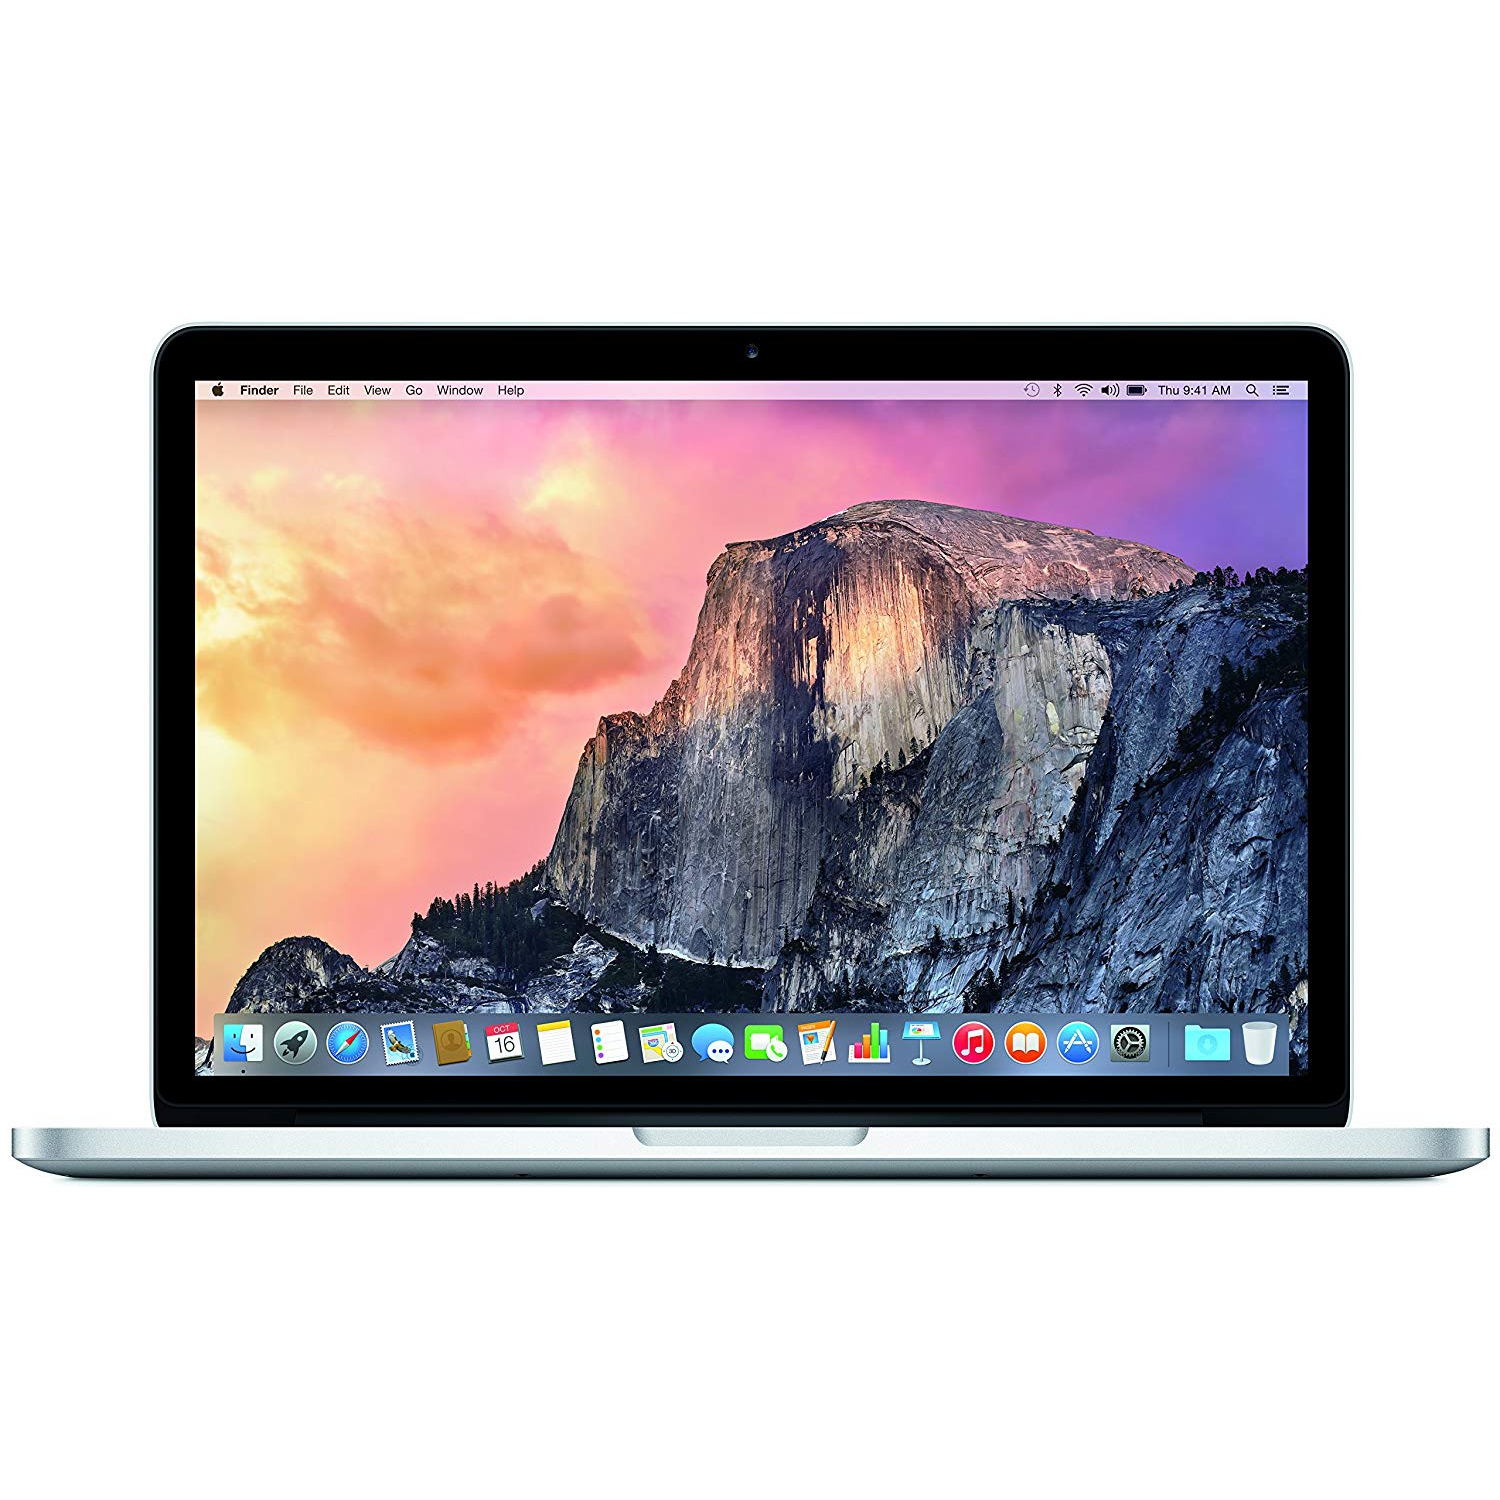 Refurbished (Good) - Apple Macbook Pro 13" - Intel Core i5-5257U 2.7GHz - 8GB RAM - 128GB SSD - 2015 Model - A1502 / MF839LL/A